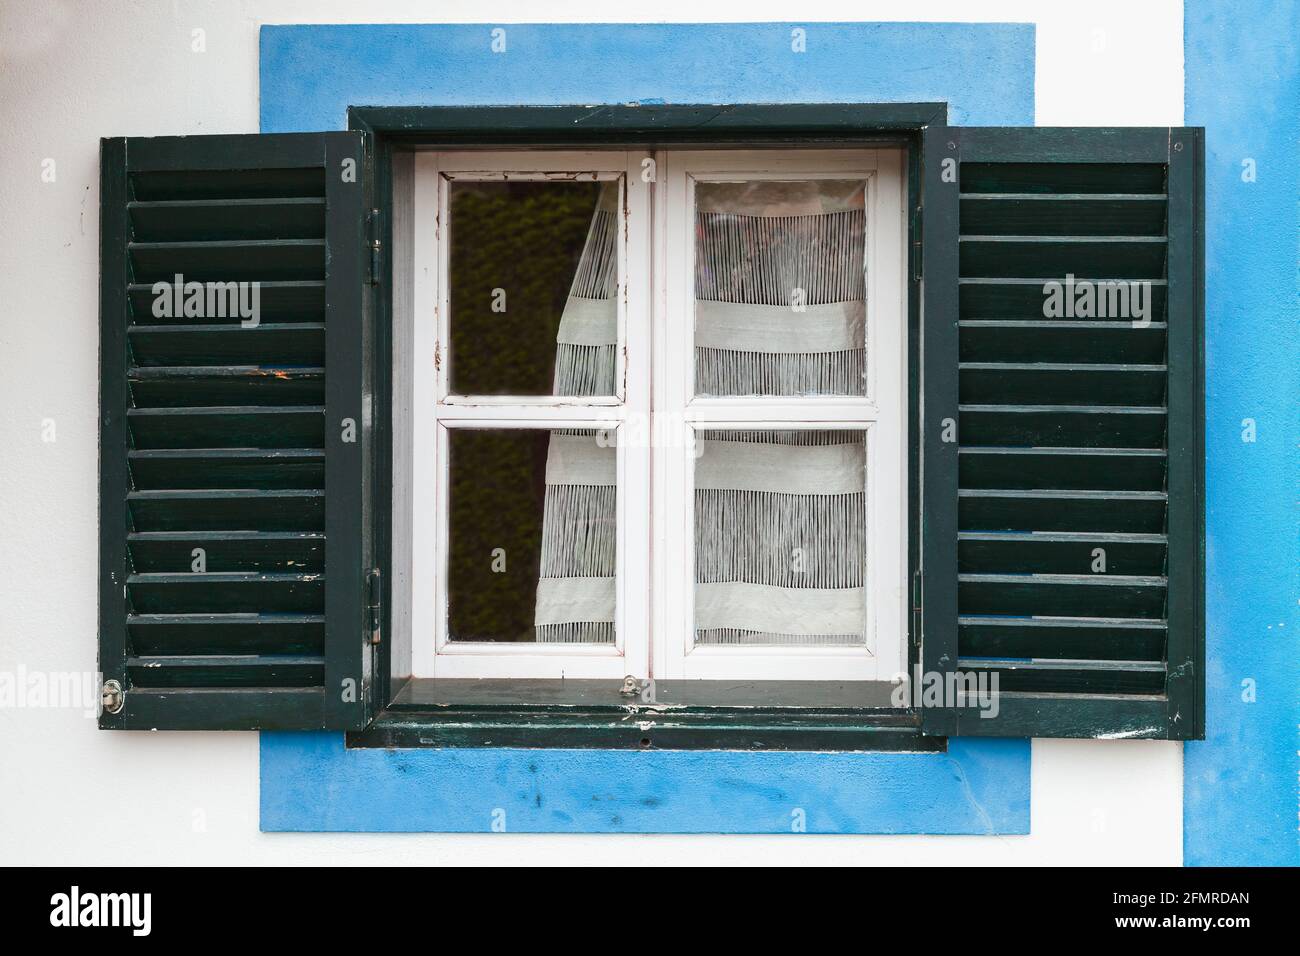 Fenêtre avec volets vert foncé ouverts dans un cadre bleu. Architecture rurale du village de Santana, île de Madère, Portugal Banque D'Images